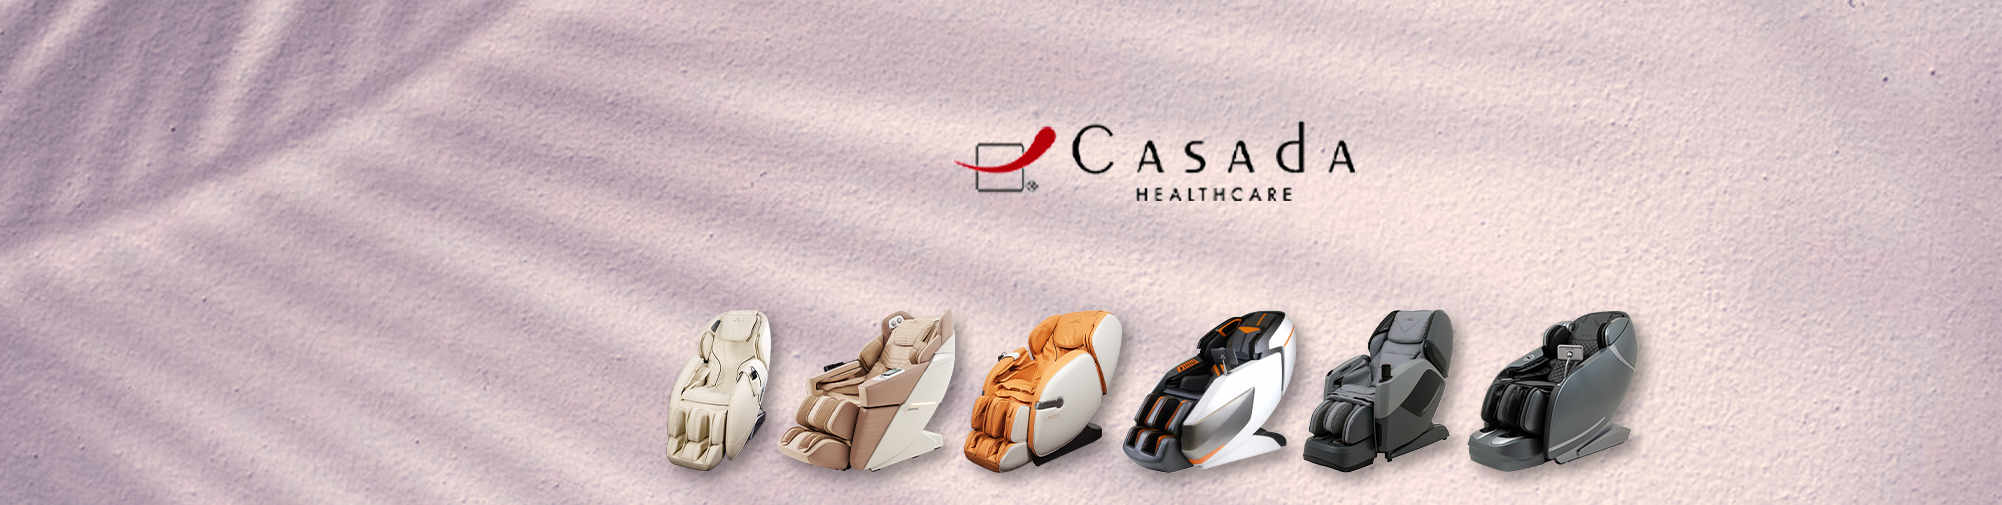 Casada - pouzdan partner | Svijet stolica za masažu